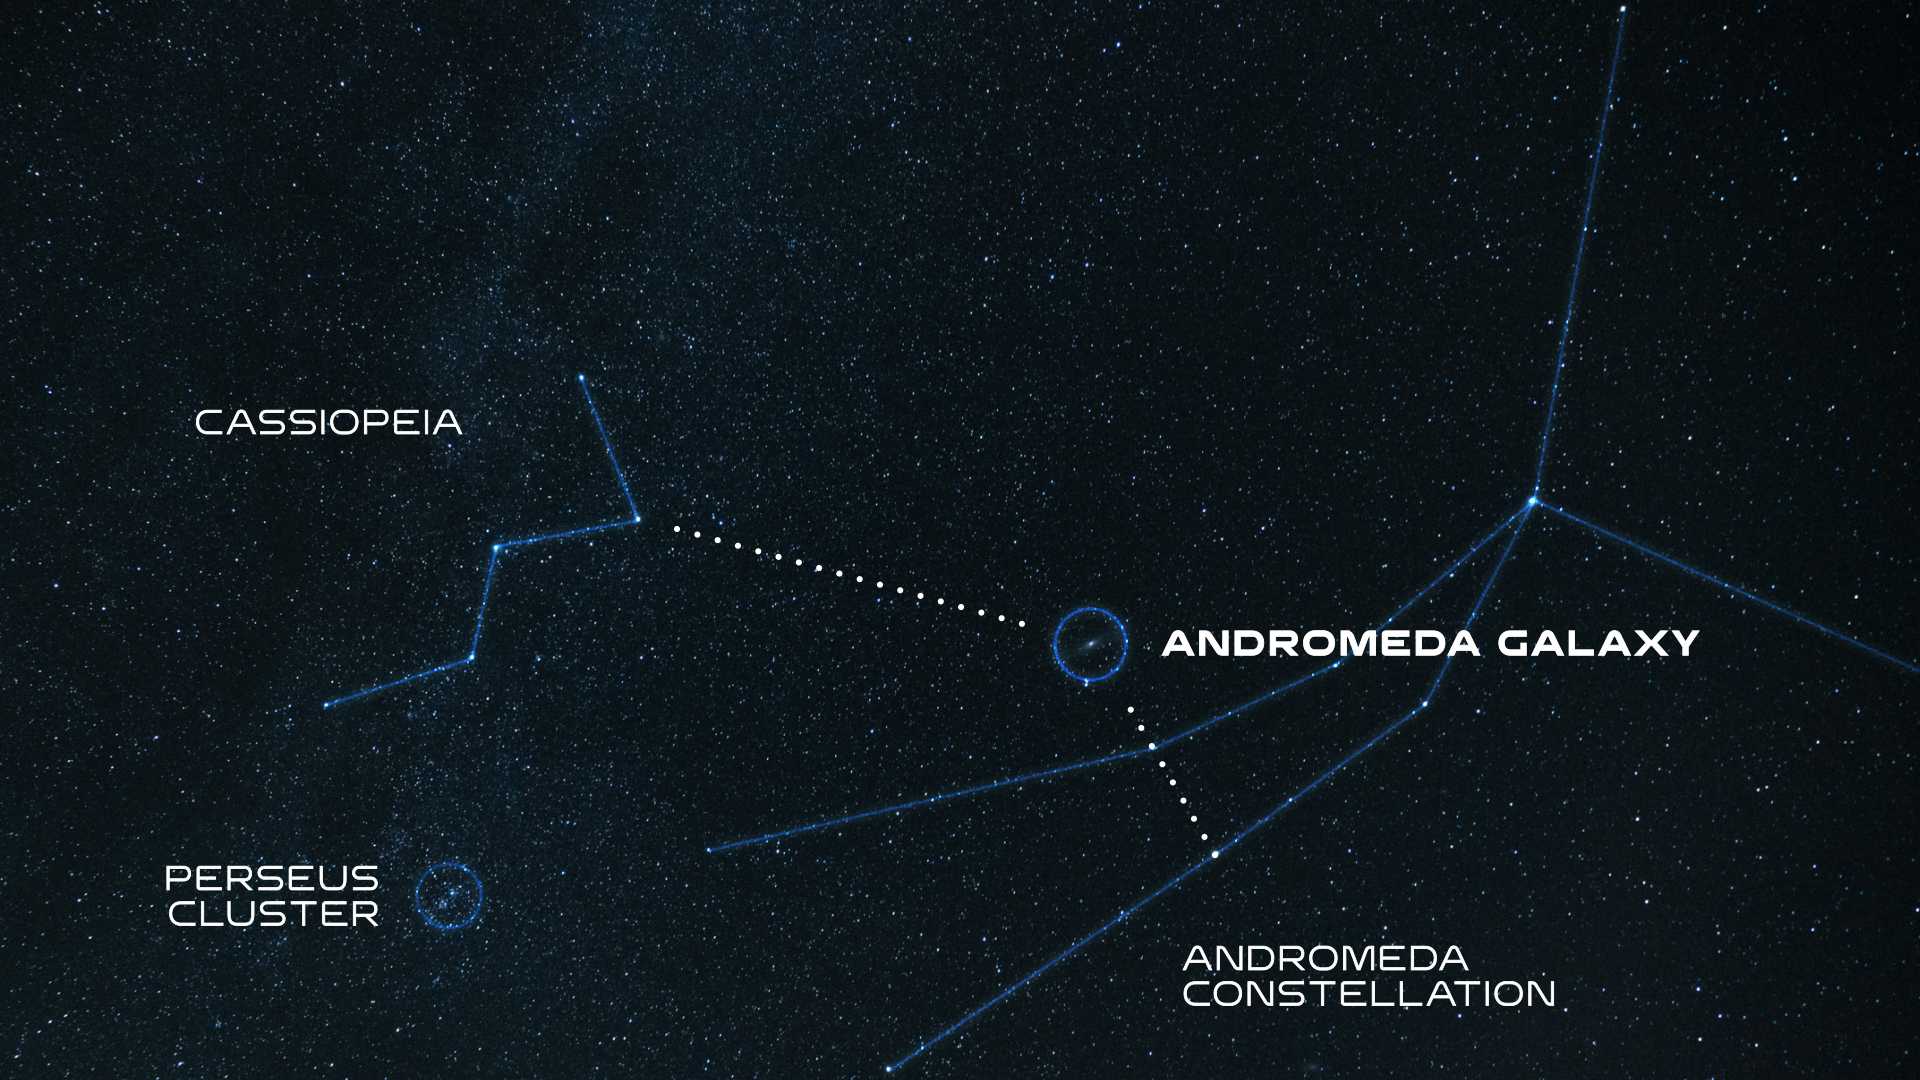 галактика андромеды на ночном небе фото